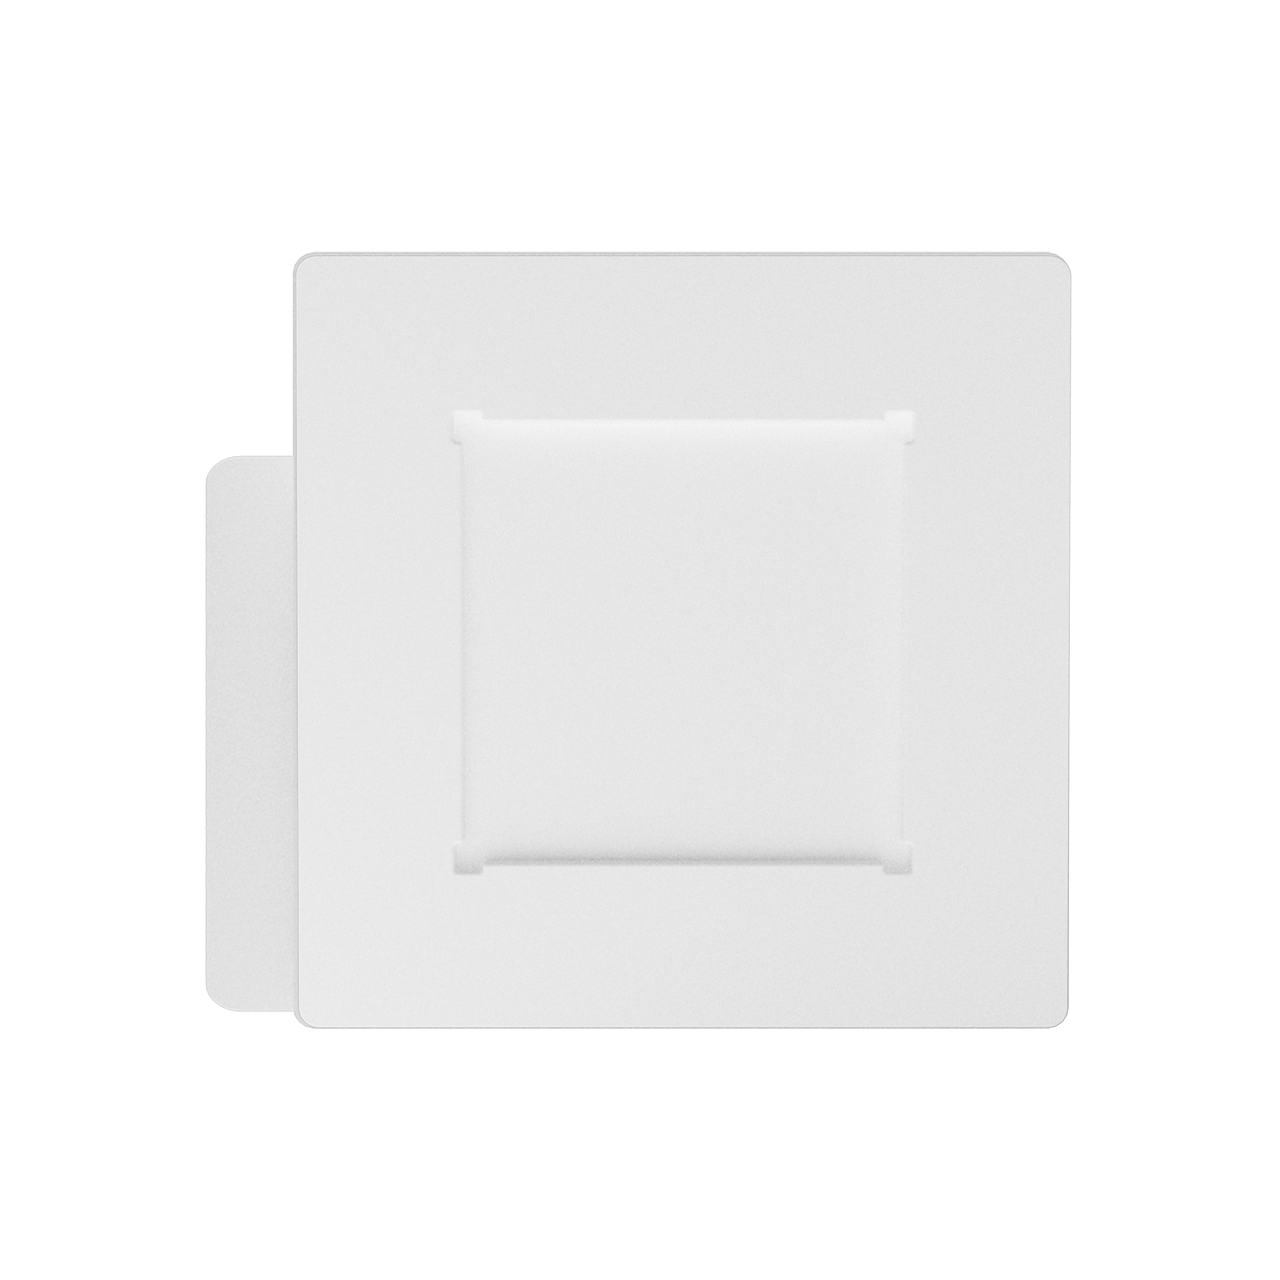 LifeSmart Cube Door & Window Sensor